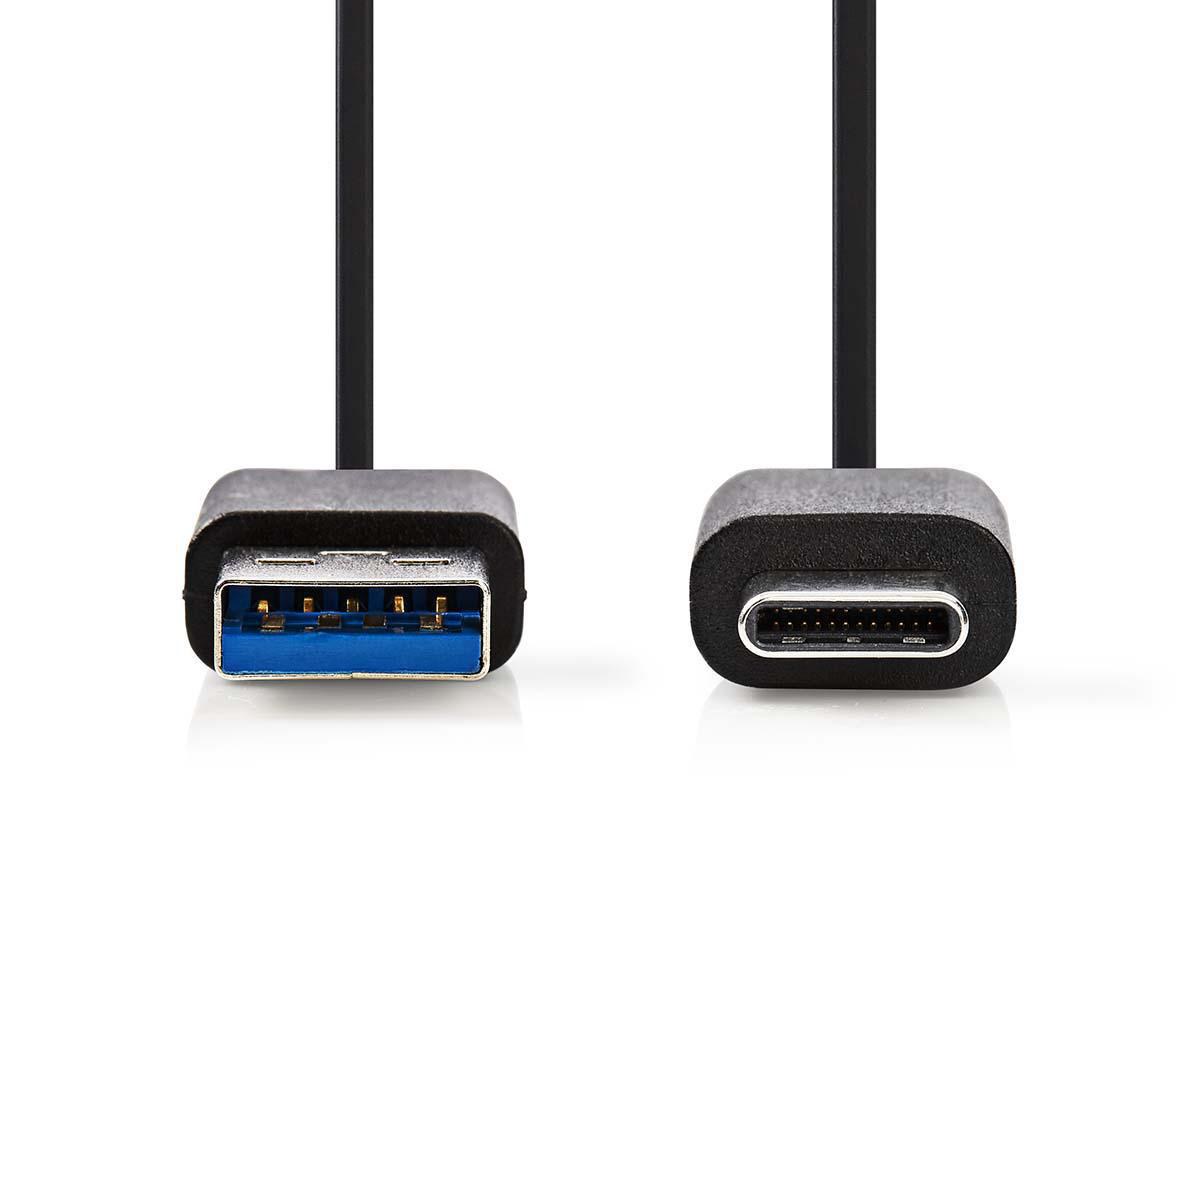 Nedis propojovací kabel USB 3.0 zástrčka USB A - zástrčka USB C, 1 m, černá (CCGP61600BK10)